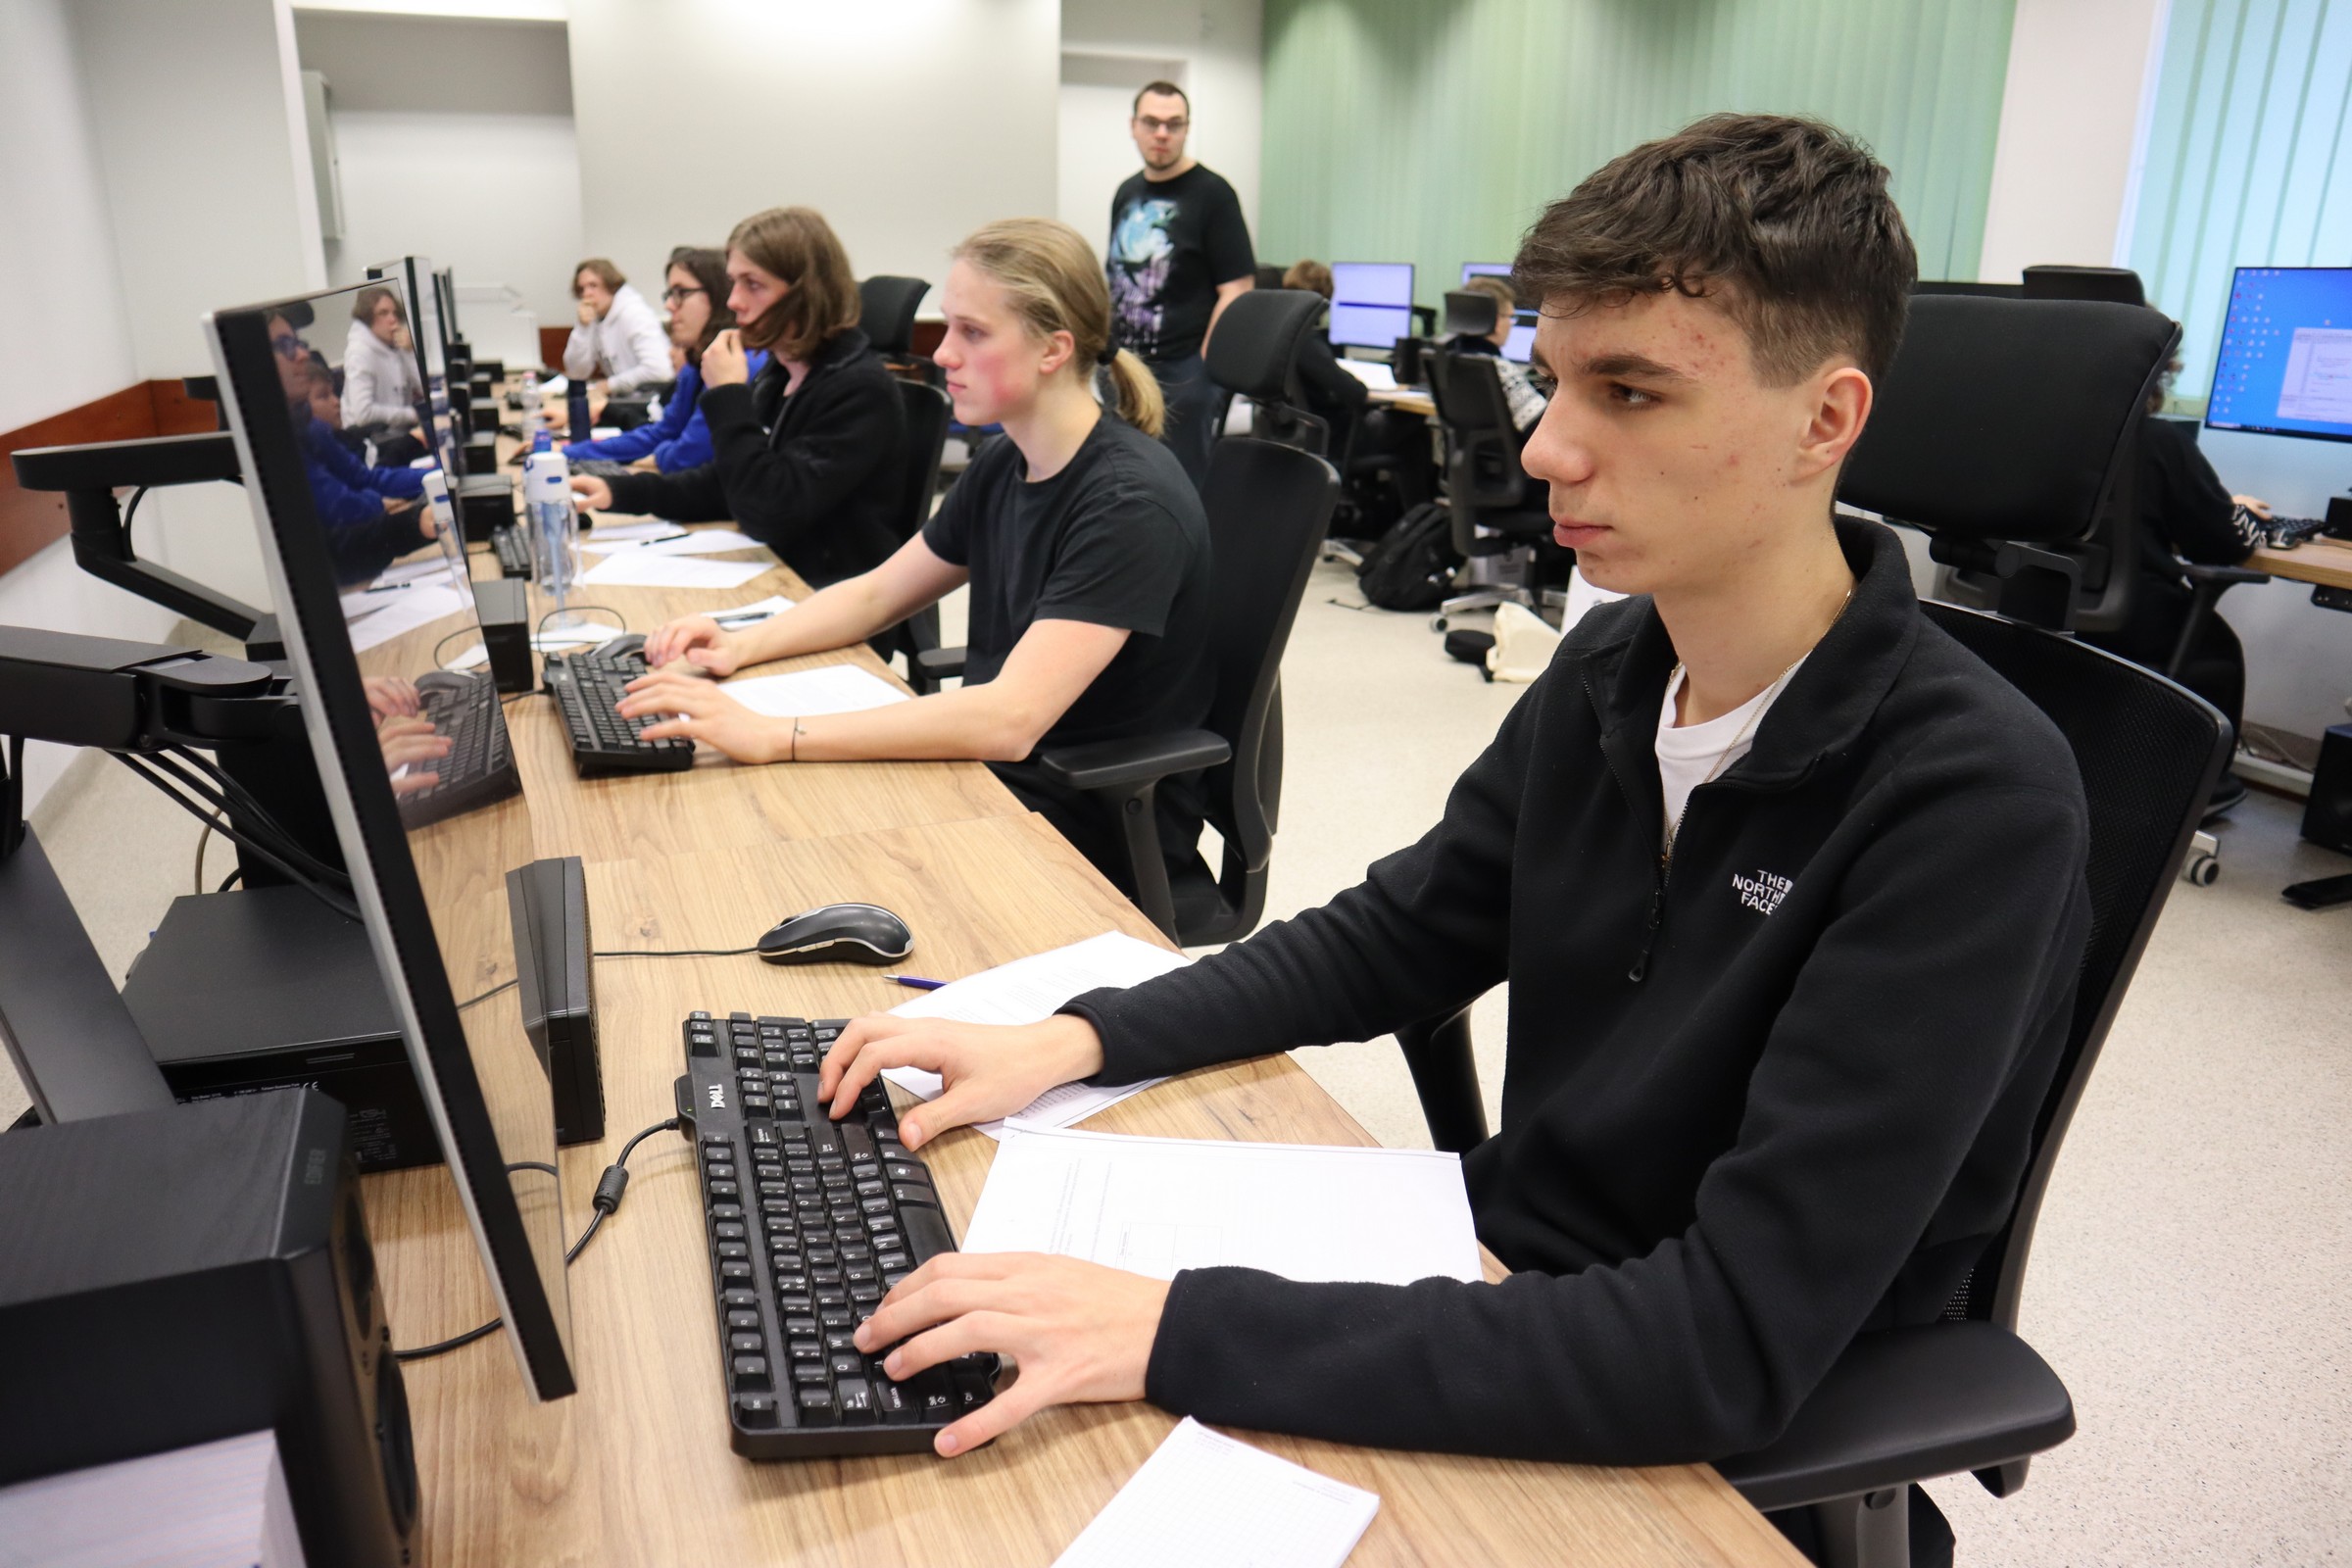 Uczestnicy konkursu ze skupieniem pracują przy komputerach rozwiązując zadania